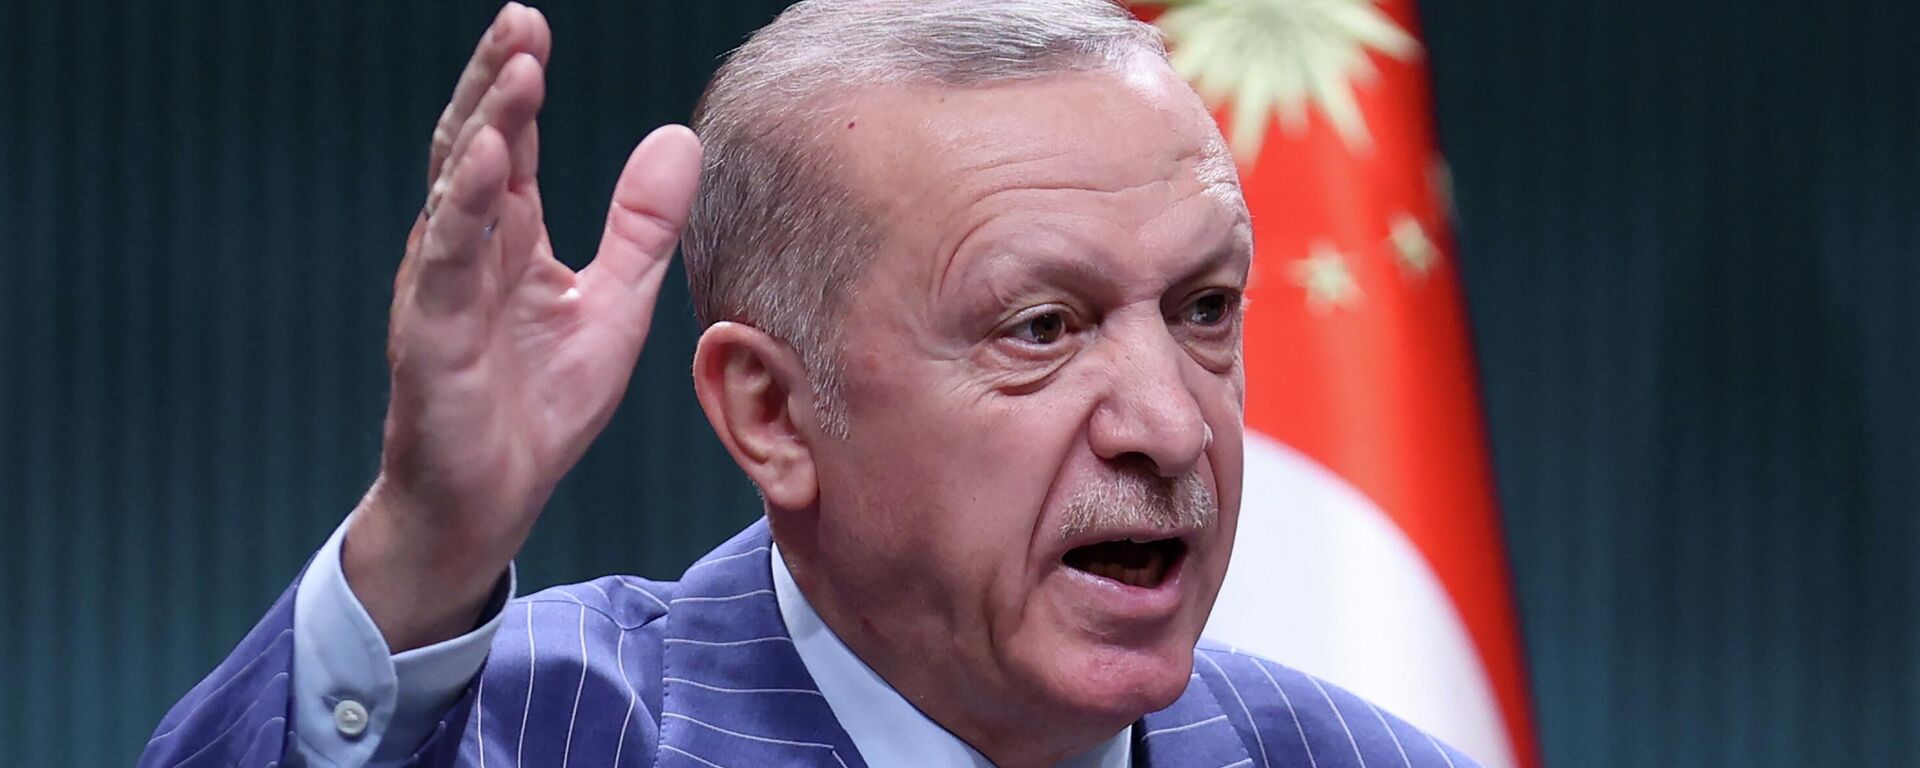  Recep Tayyip Erdogan, el presidente turco - Sputnik Mundo, 1920, 17.05.2022